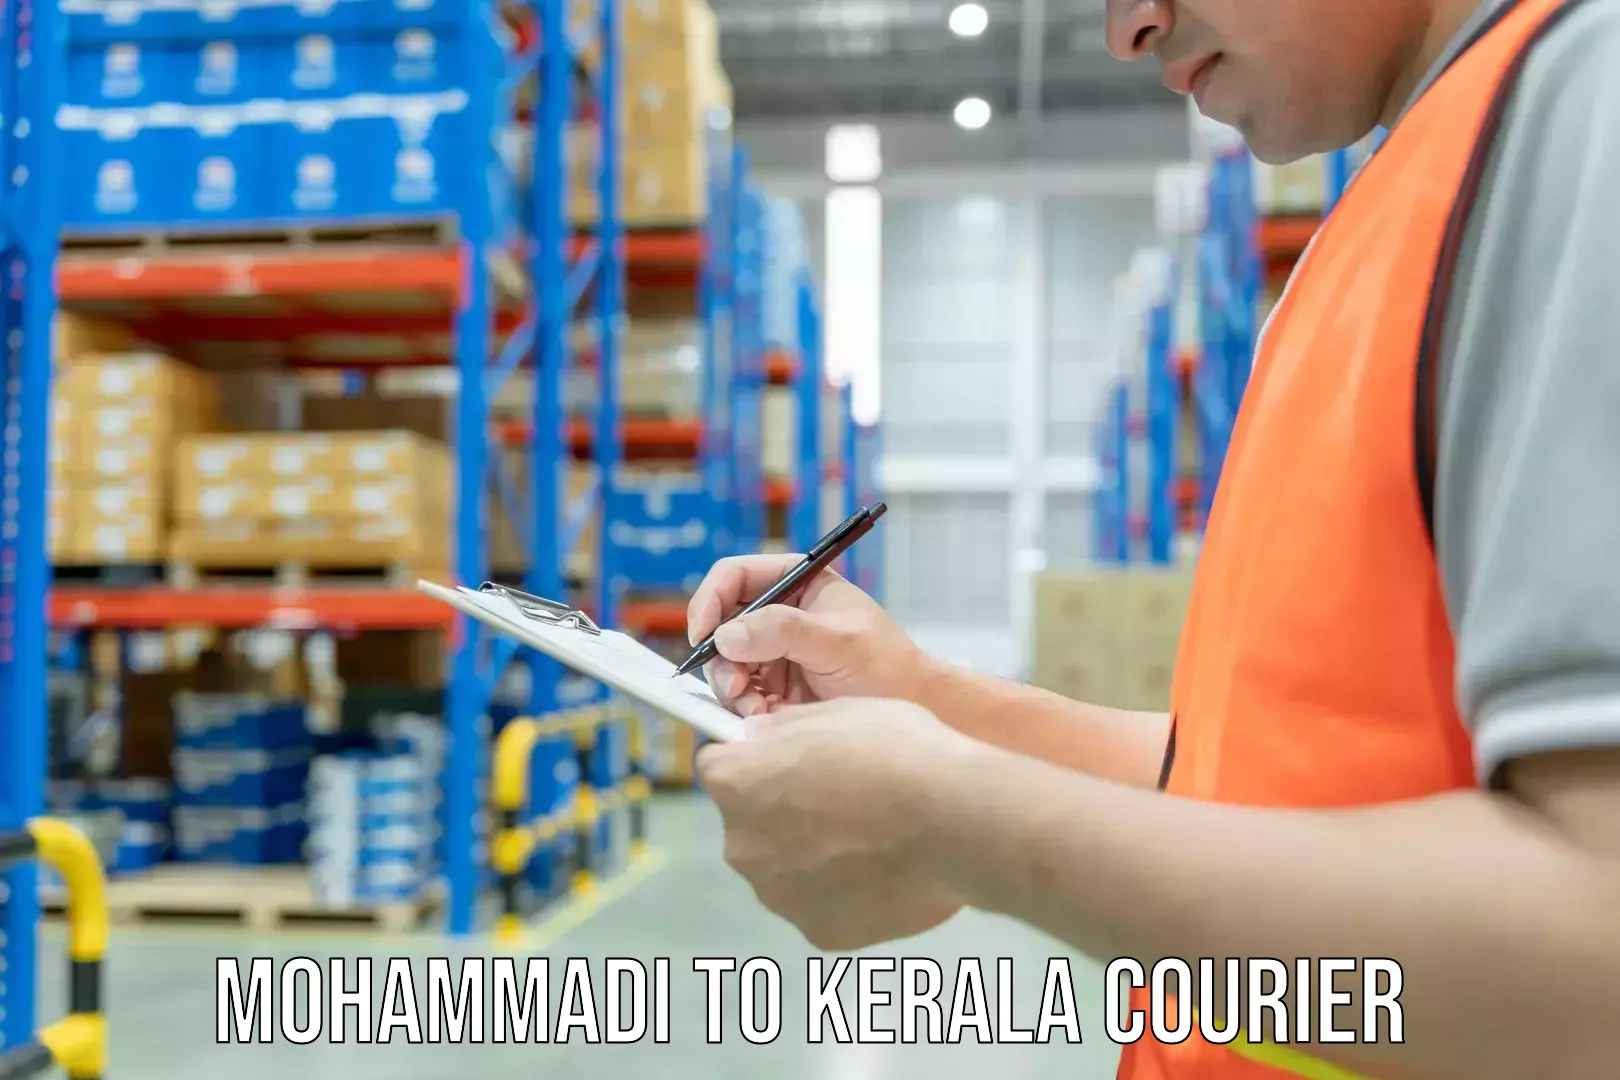 Home shifting experts Mohammadi to Kerala